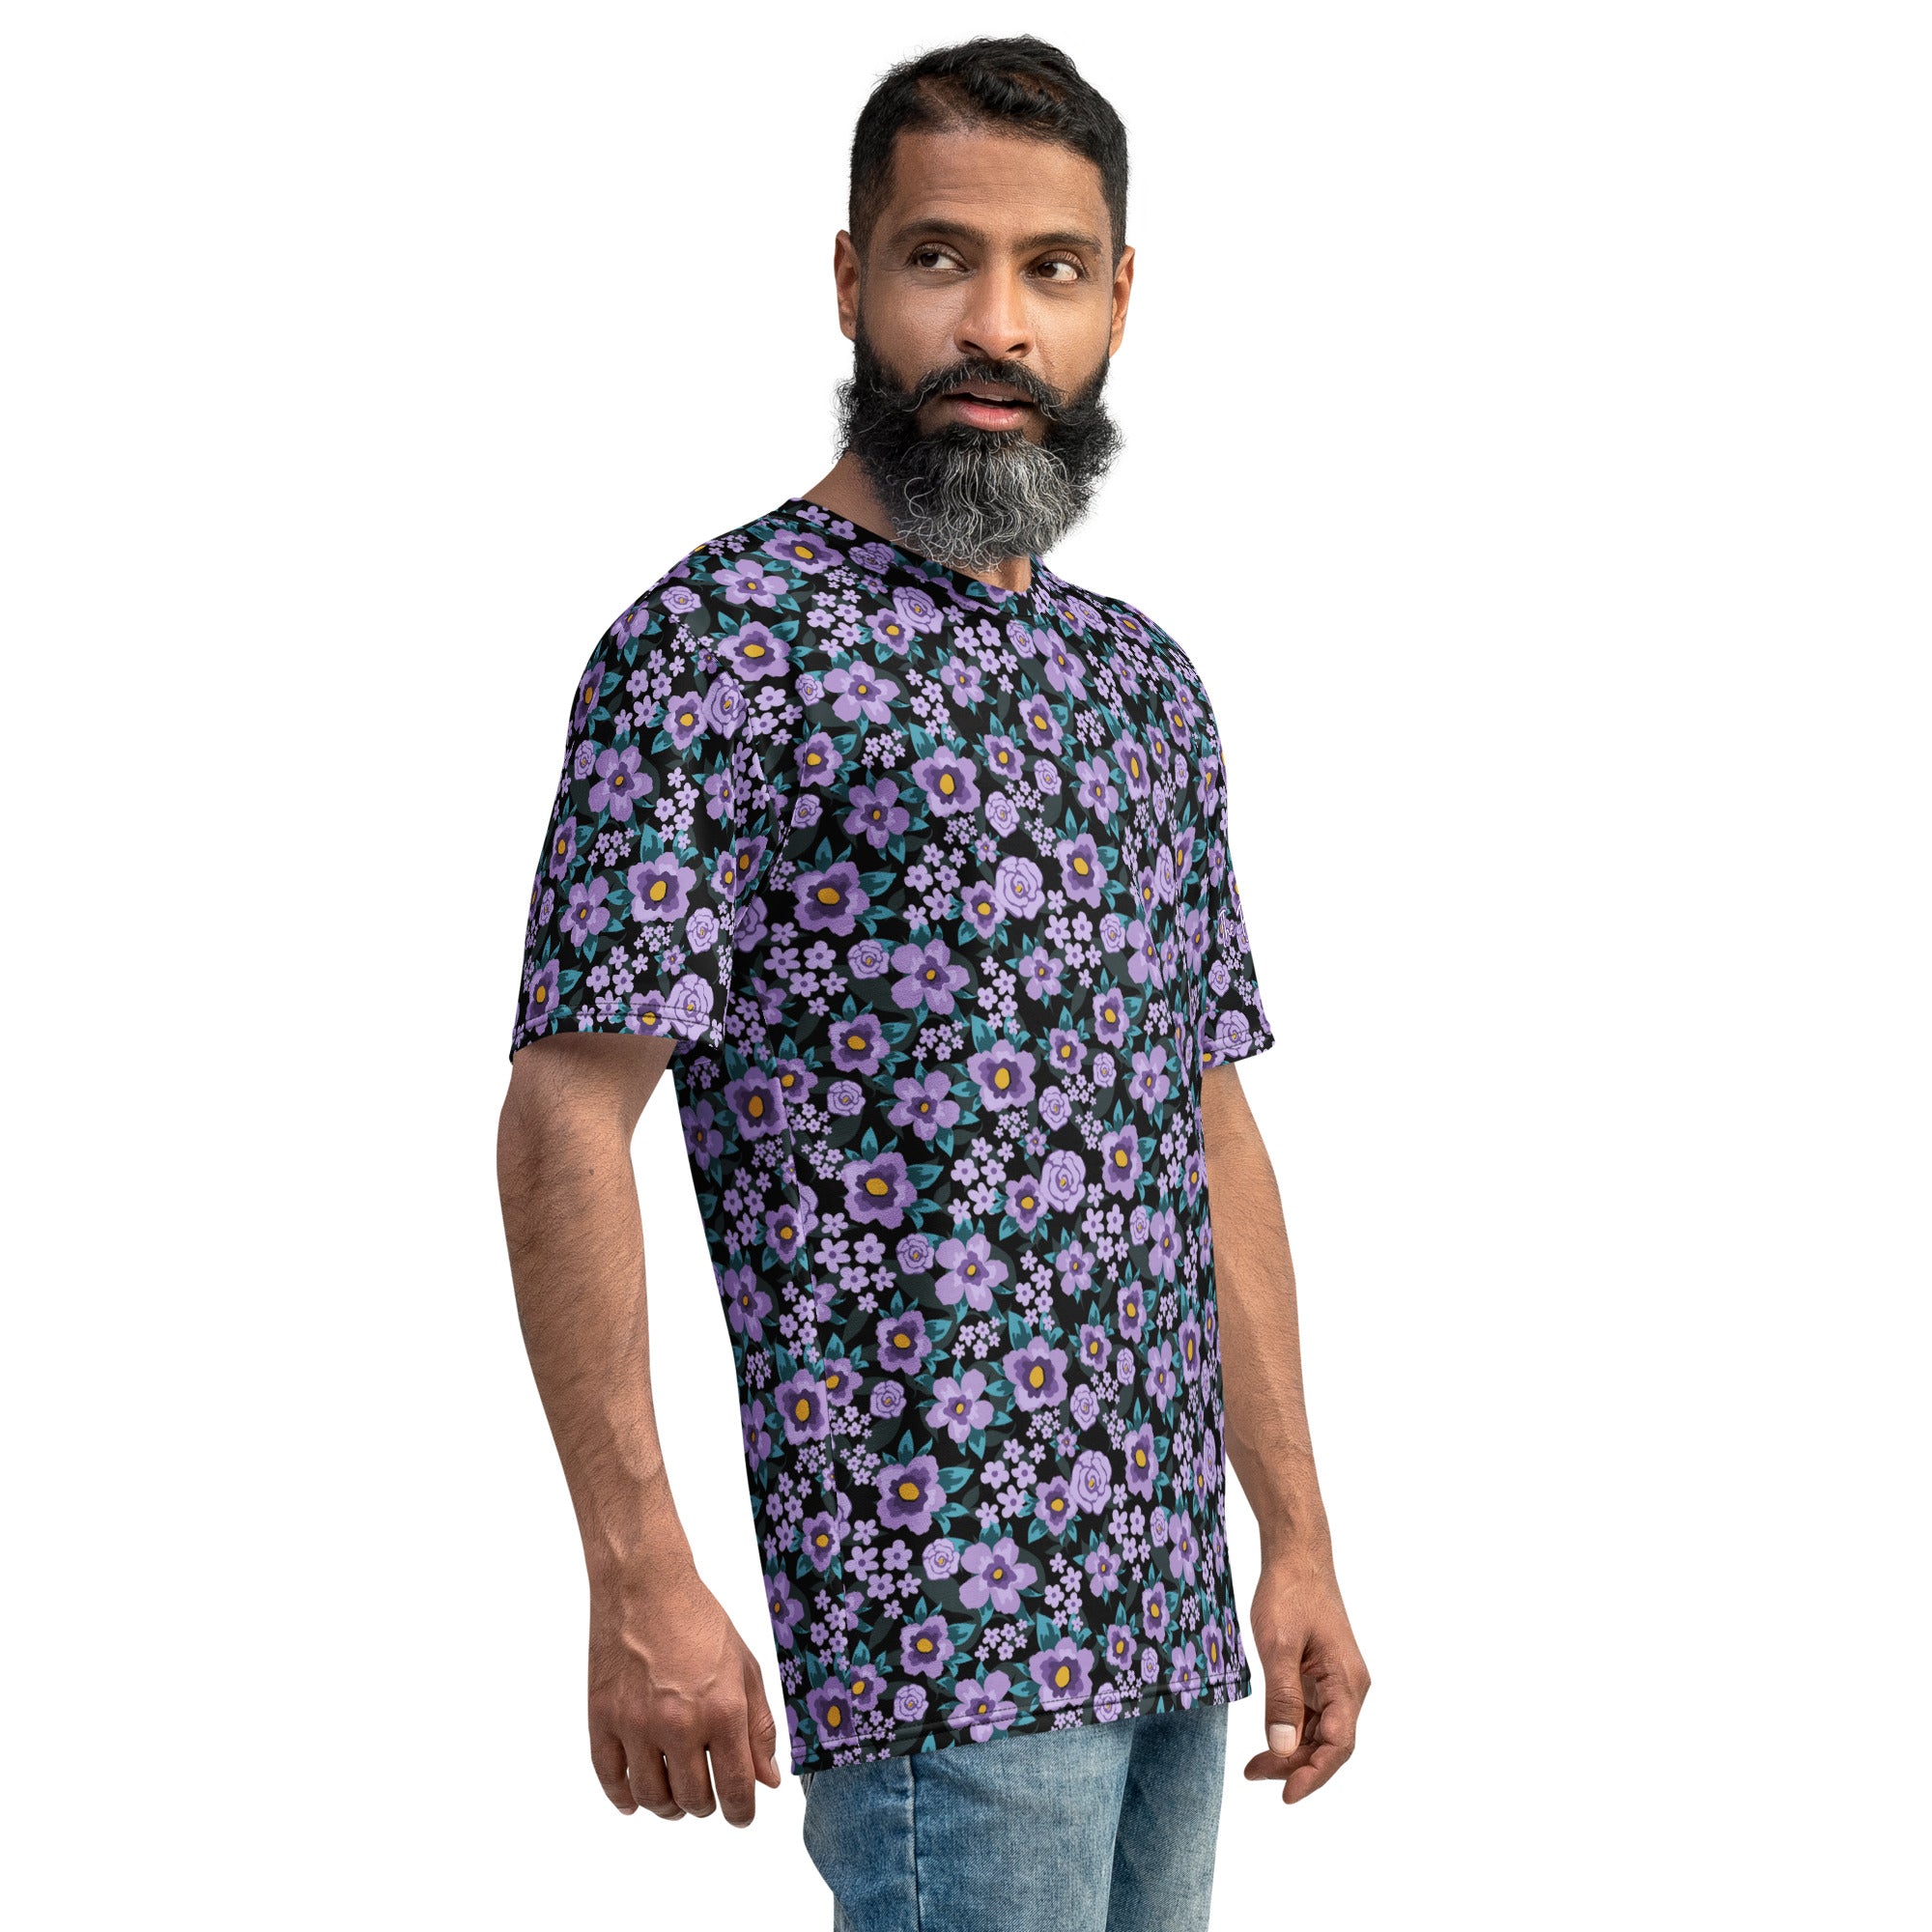 TBP Purple Floral Unisex T-shirt